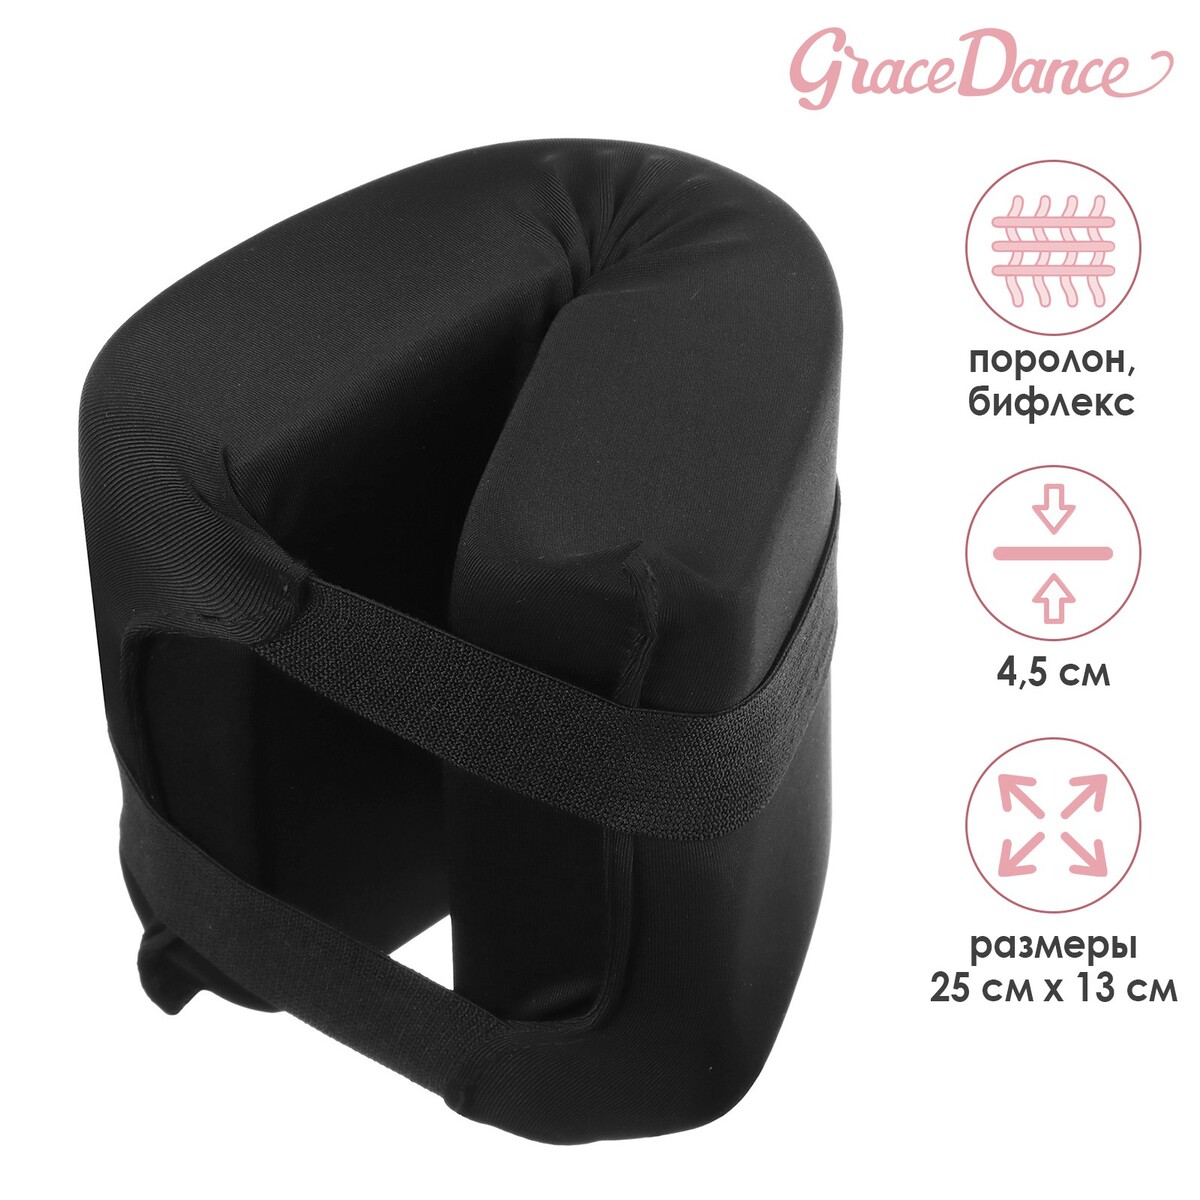 Подушка для растяжки grace dance, цвет черный подушка гимнастическая для растяжки grace dance 38х25 см зеленый